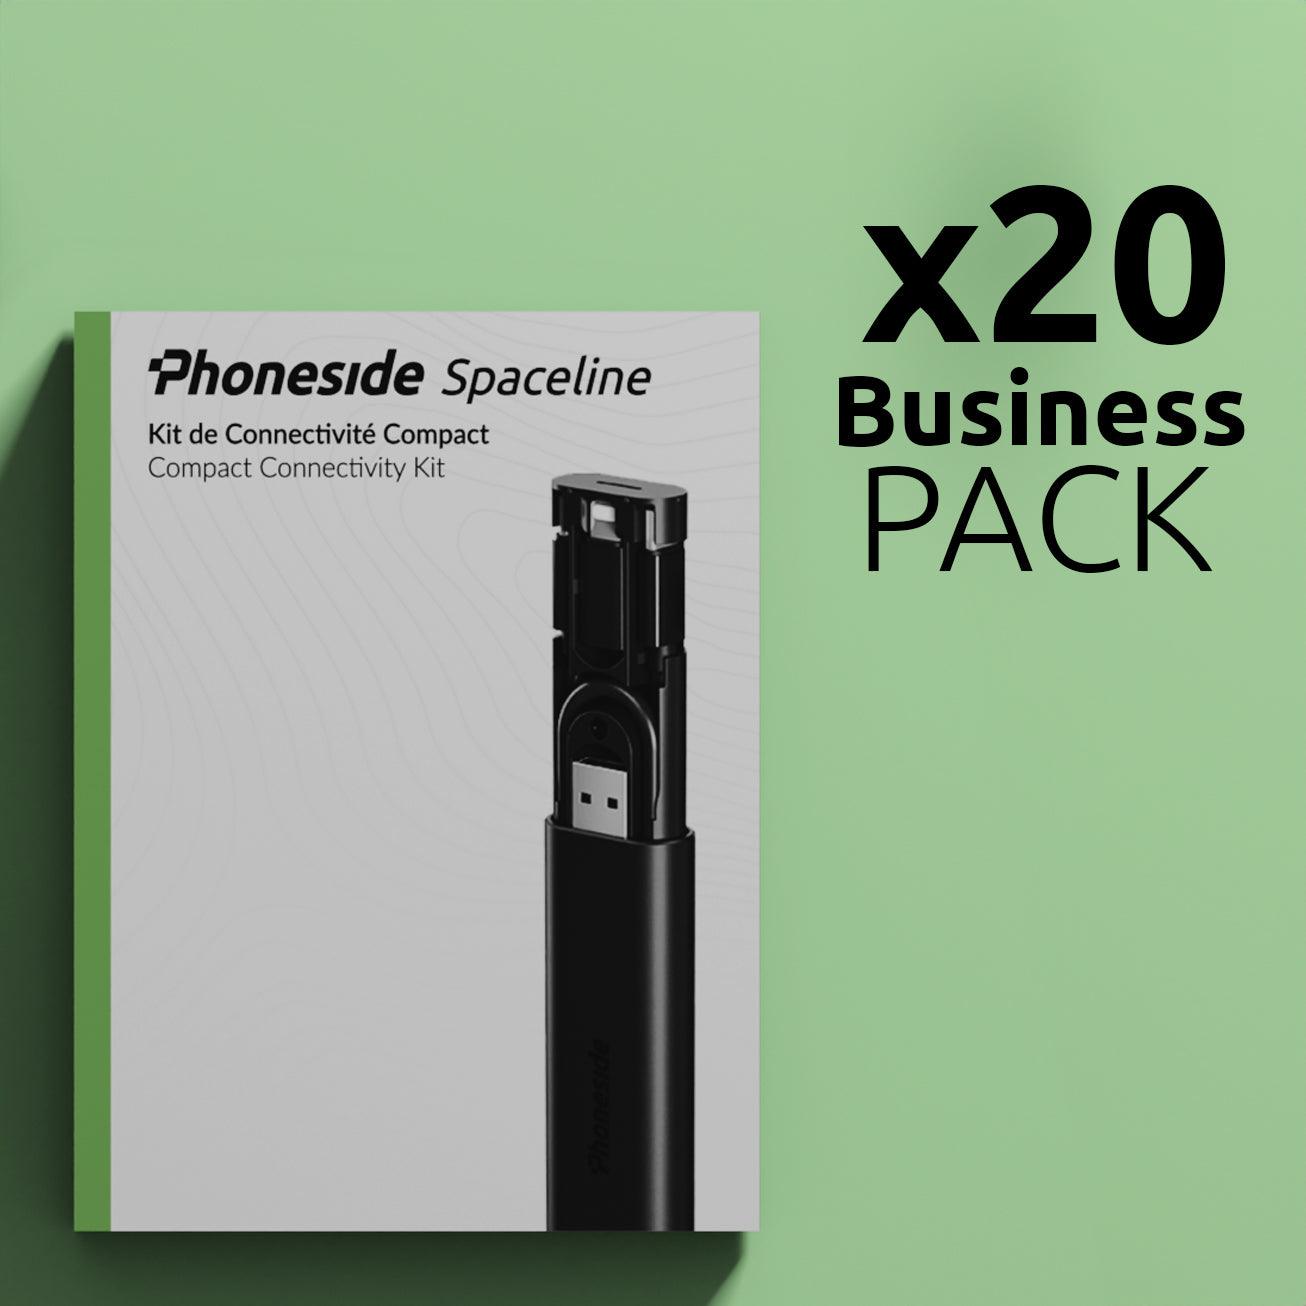 PACK Business x20 Phoneside Spaceline Noir - Phoneside